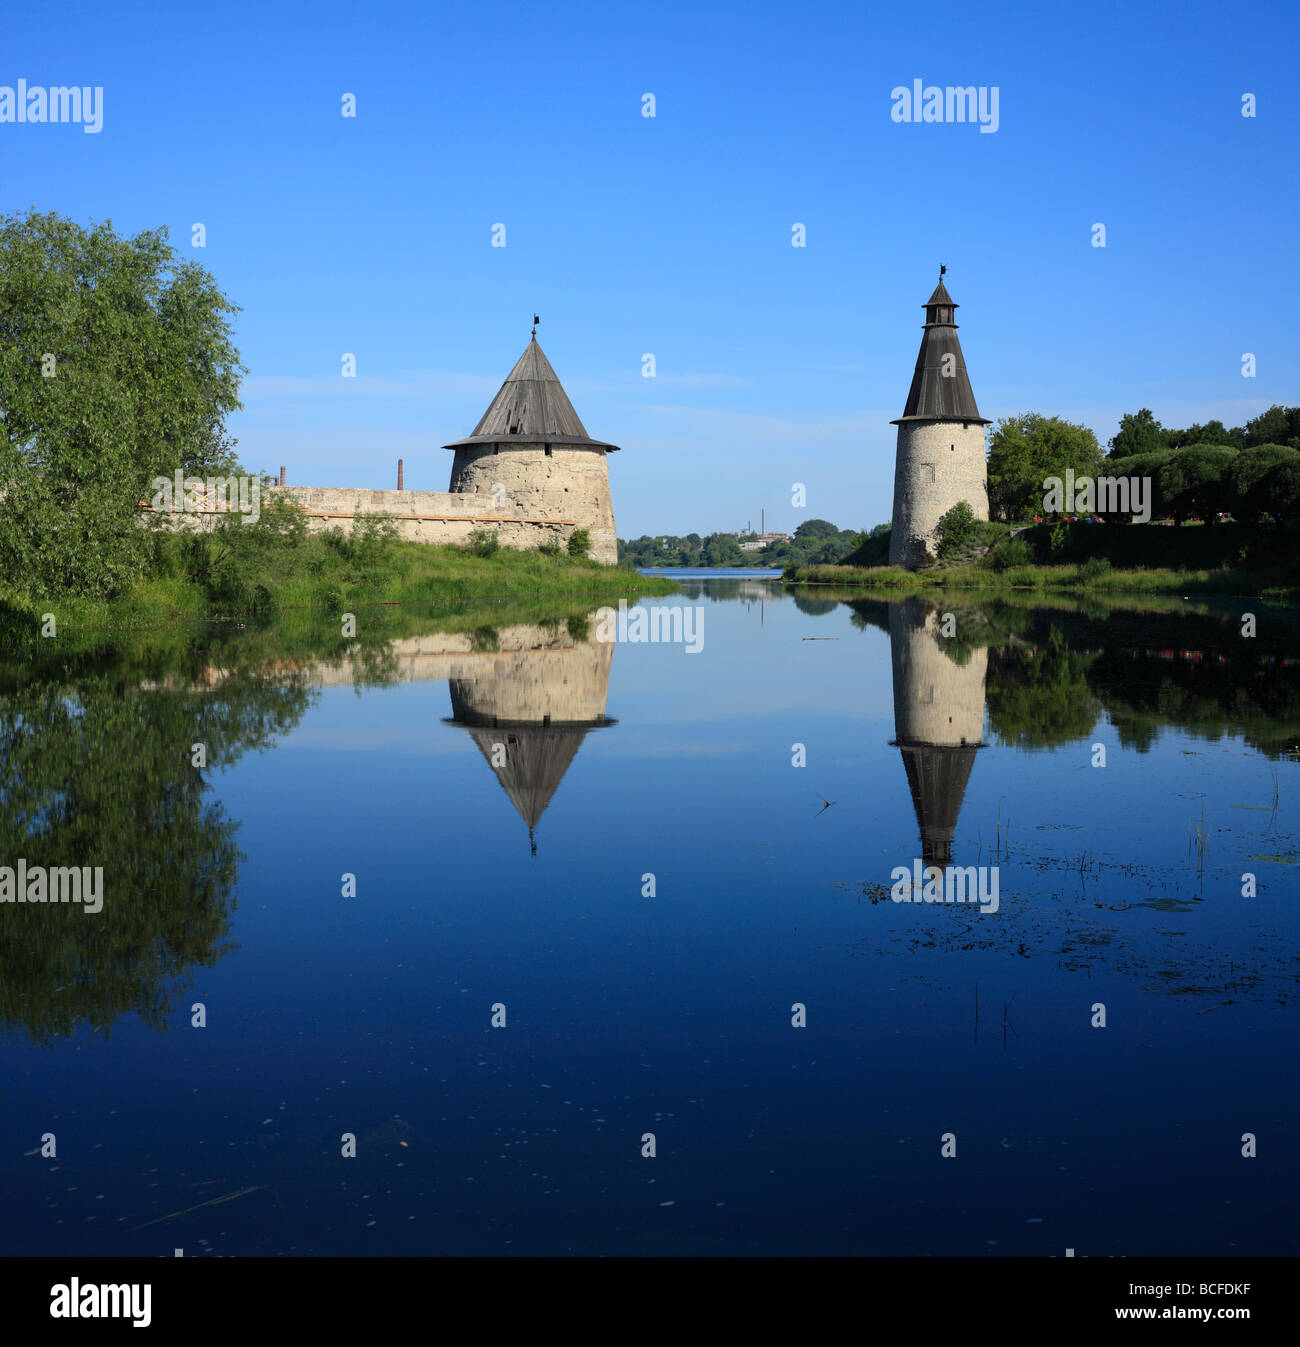 View of the Pskov kremlin from the Pskova river, Pskov, Pskov region, Russia Stock Photo